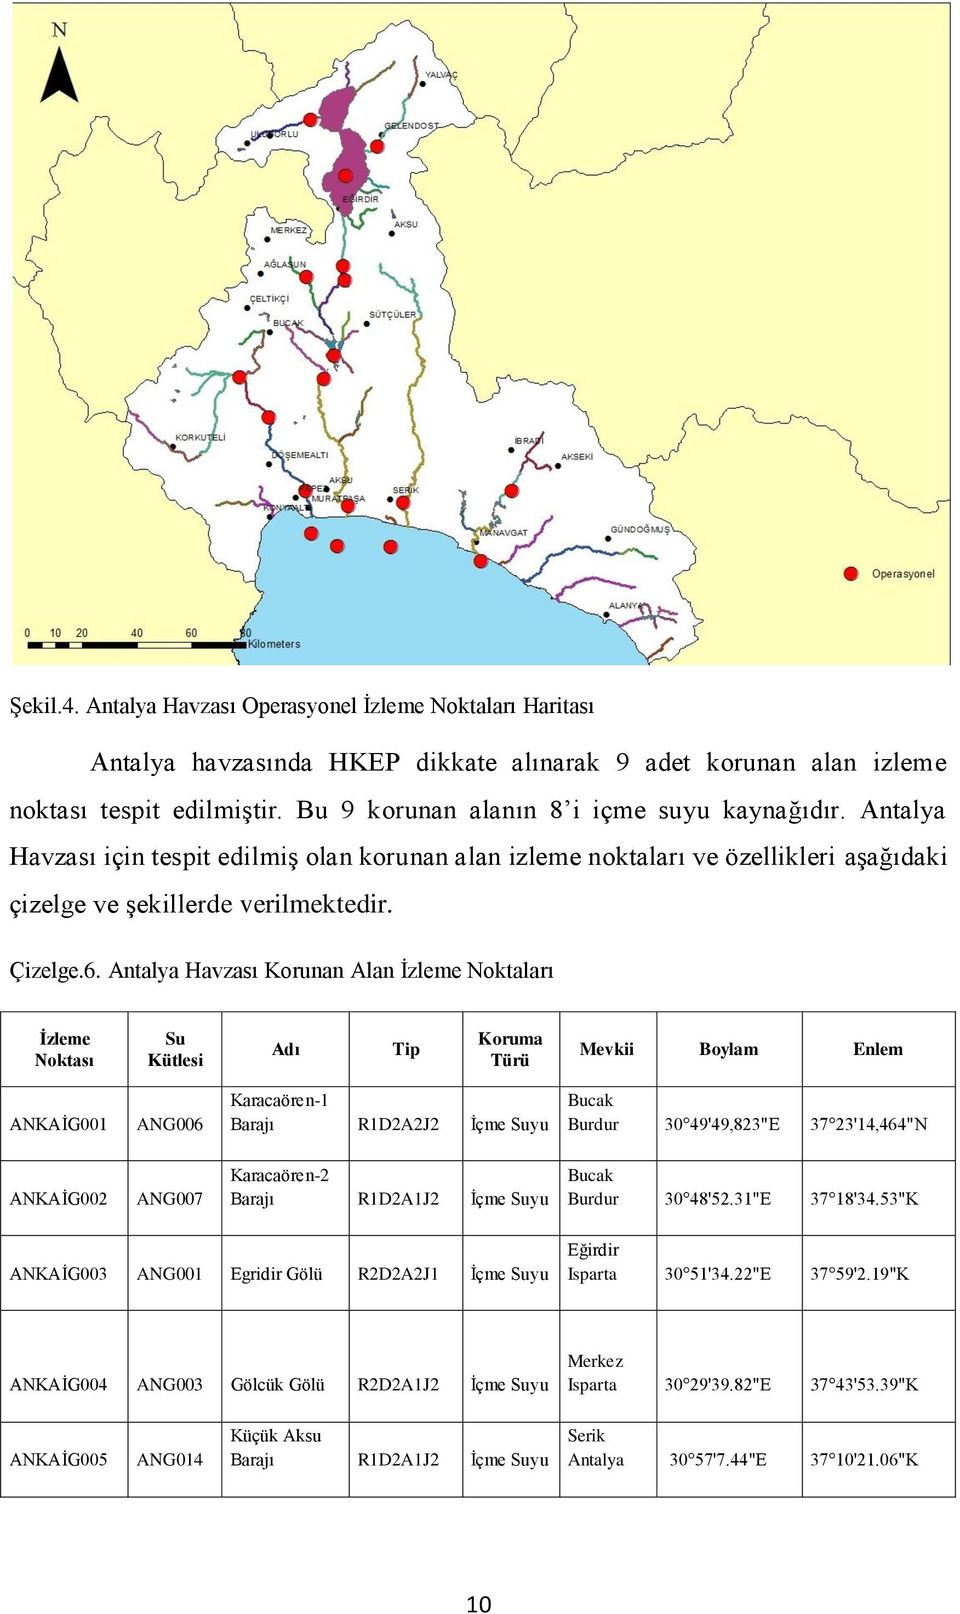 Antalya Havzası Korunan Alan İzleme Noktaları İzleme Noktası Su Kütlesi Adı Tip Koruma Türü Mevkii Boylam Enlem ANKAİG001 ANG006 Karacaören-1 Barajı R1D2A2J2 İçme Suyu Bucak Burdur 30 49'49,823"E 37